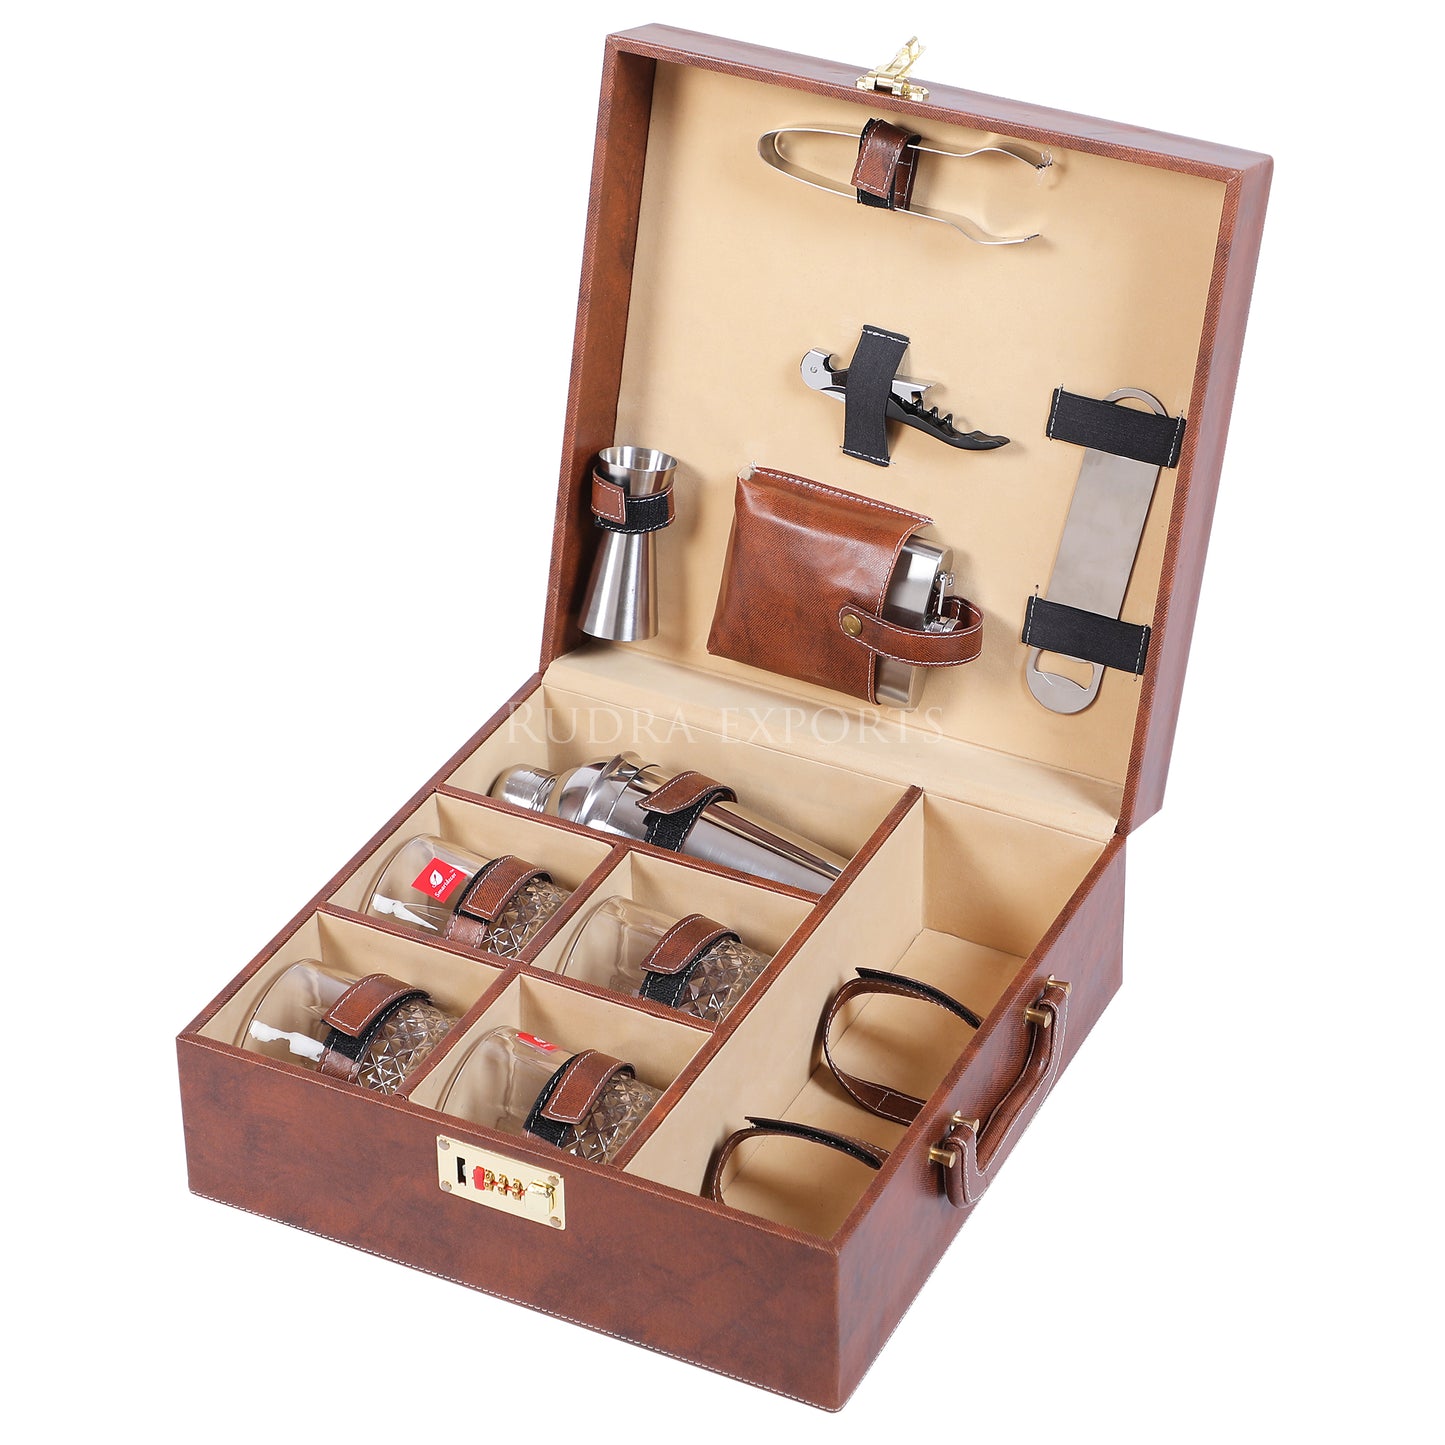 Rudra Exports Bar Set | Portable Leatherette Bar Set I Travel Bar Sets I Holds 01 Bottle & 04 Whisky Glasses (Brown)